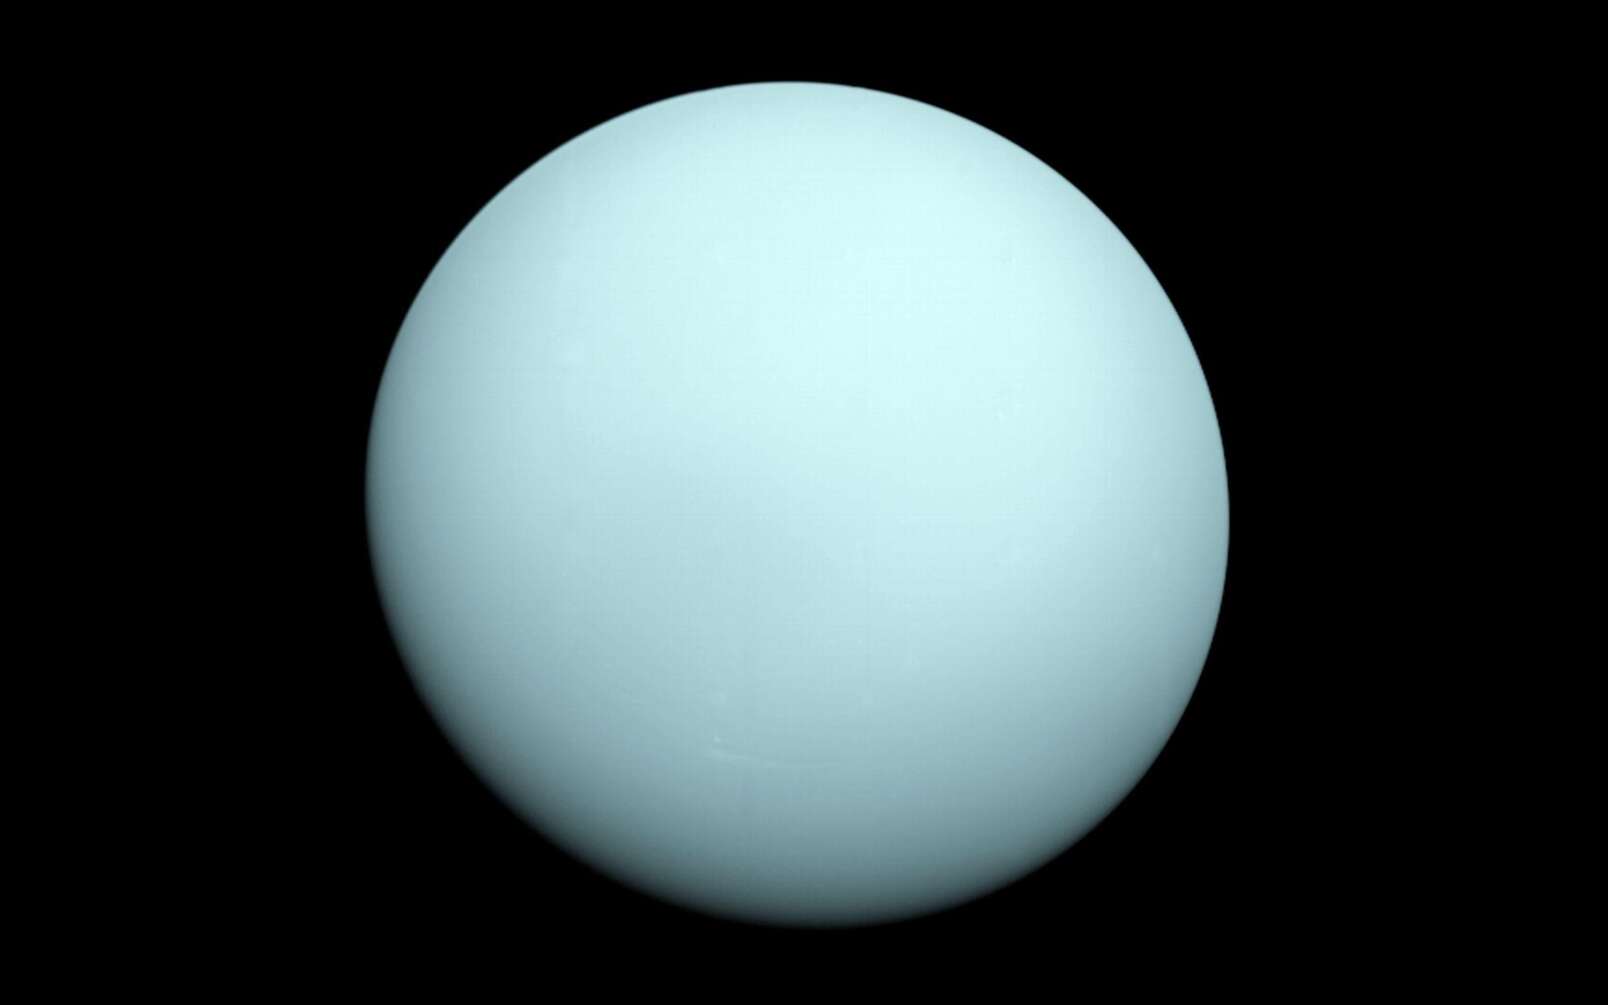 La géante glacée Uranus photographiée par Voyager 2 en 1986. © Nasa, JPL-Caltech